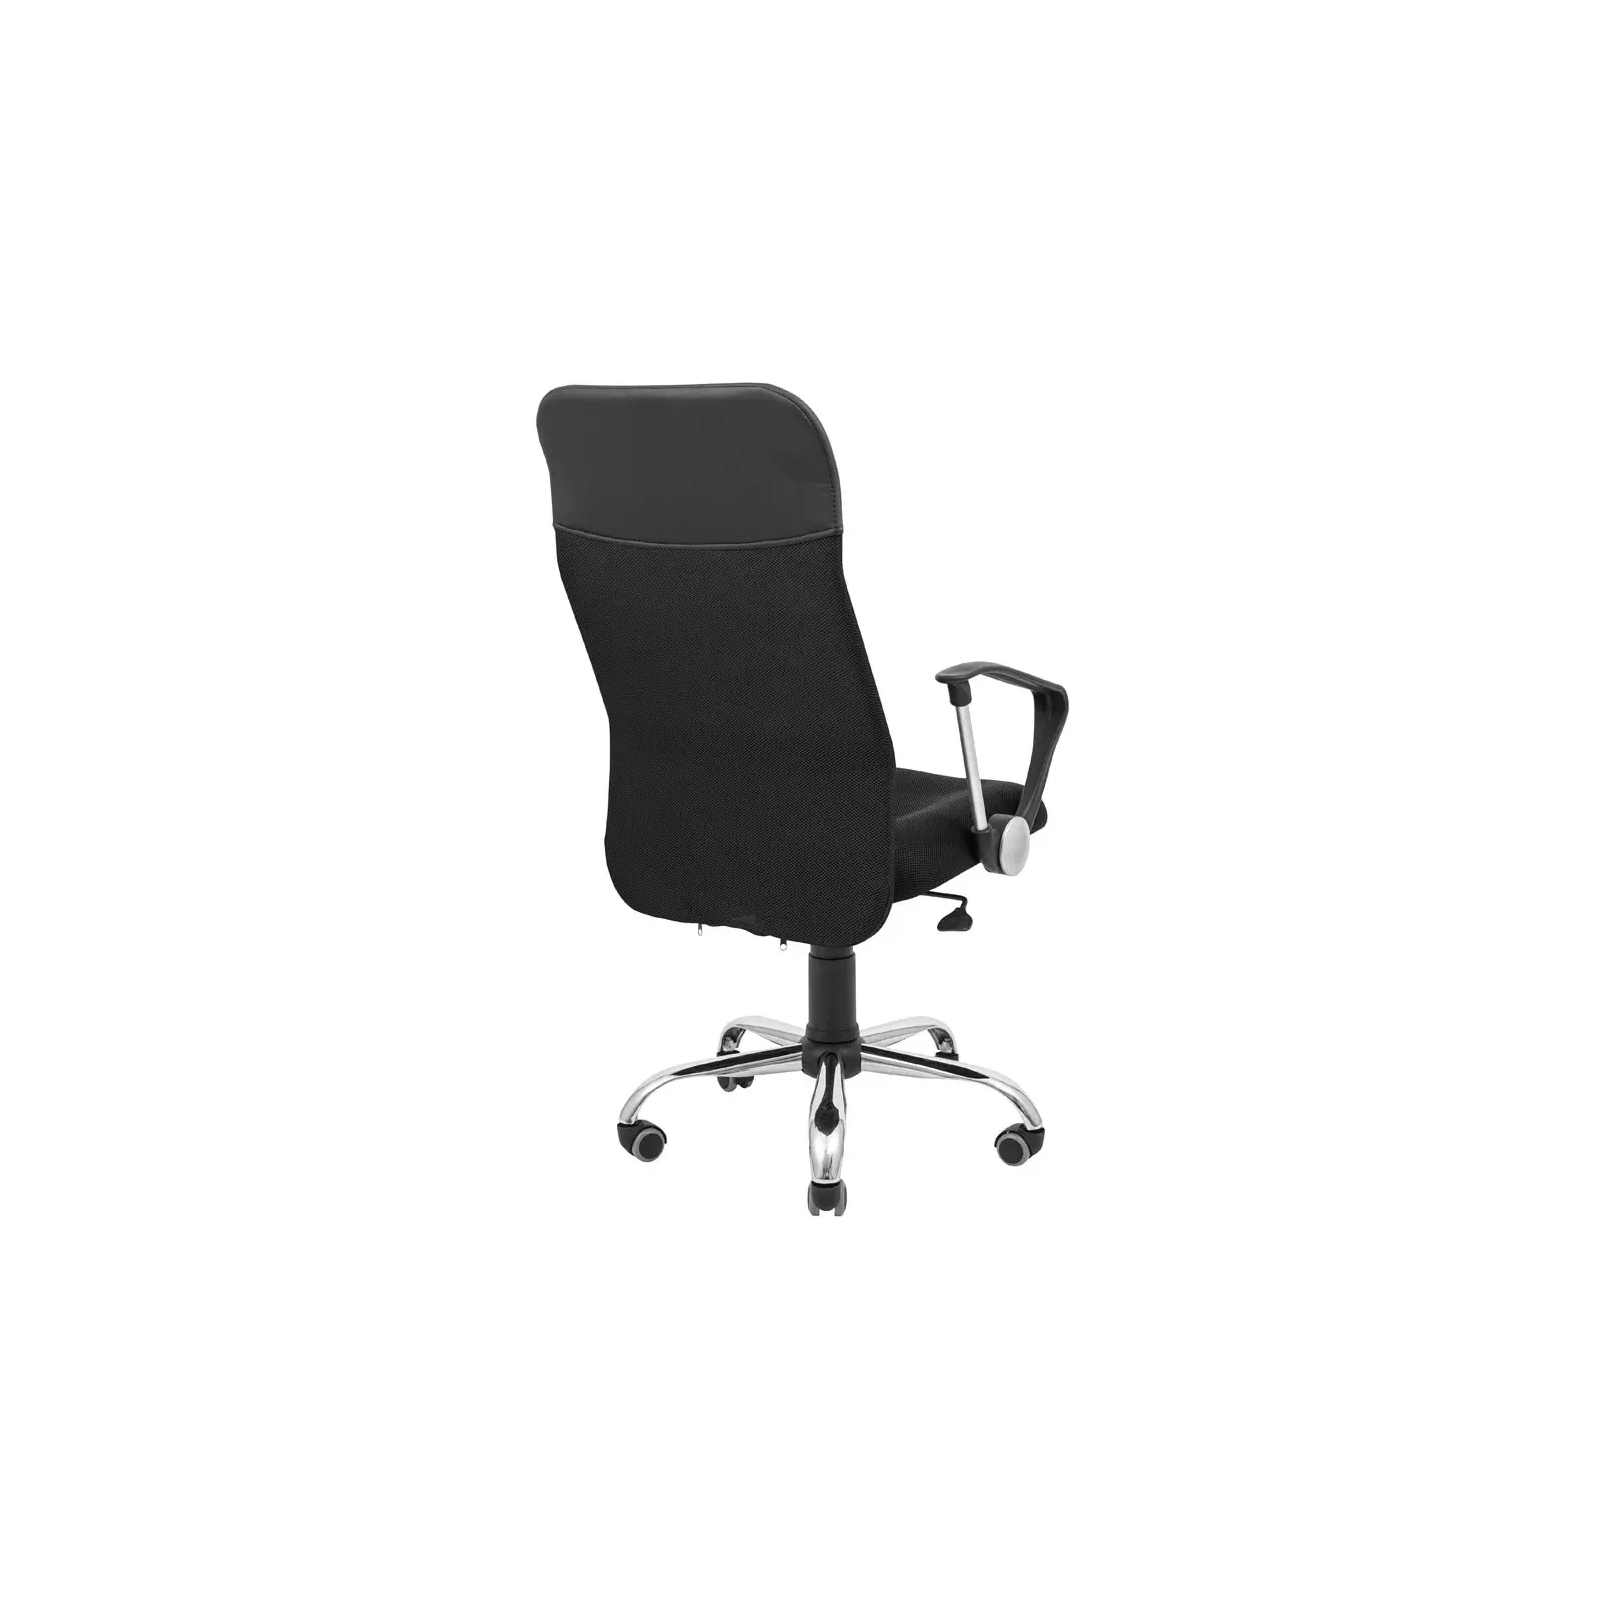 Офисное кресло Richman Ультра Ю Хром M-1 (Tilt) Сетка черная (ADD0003100) изображение 4